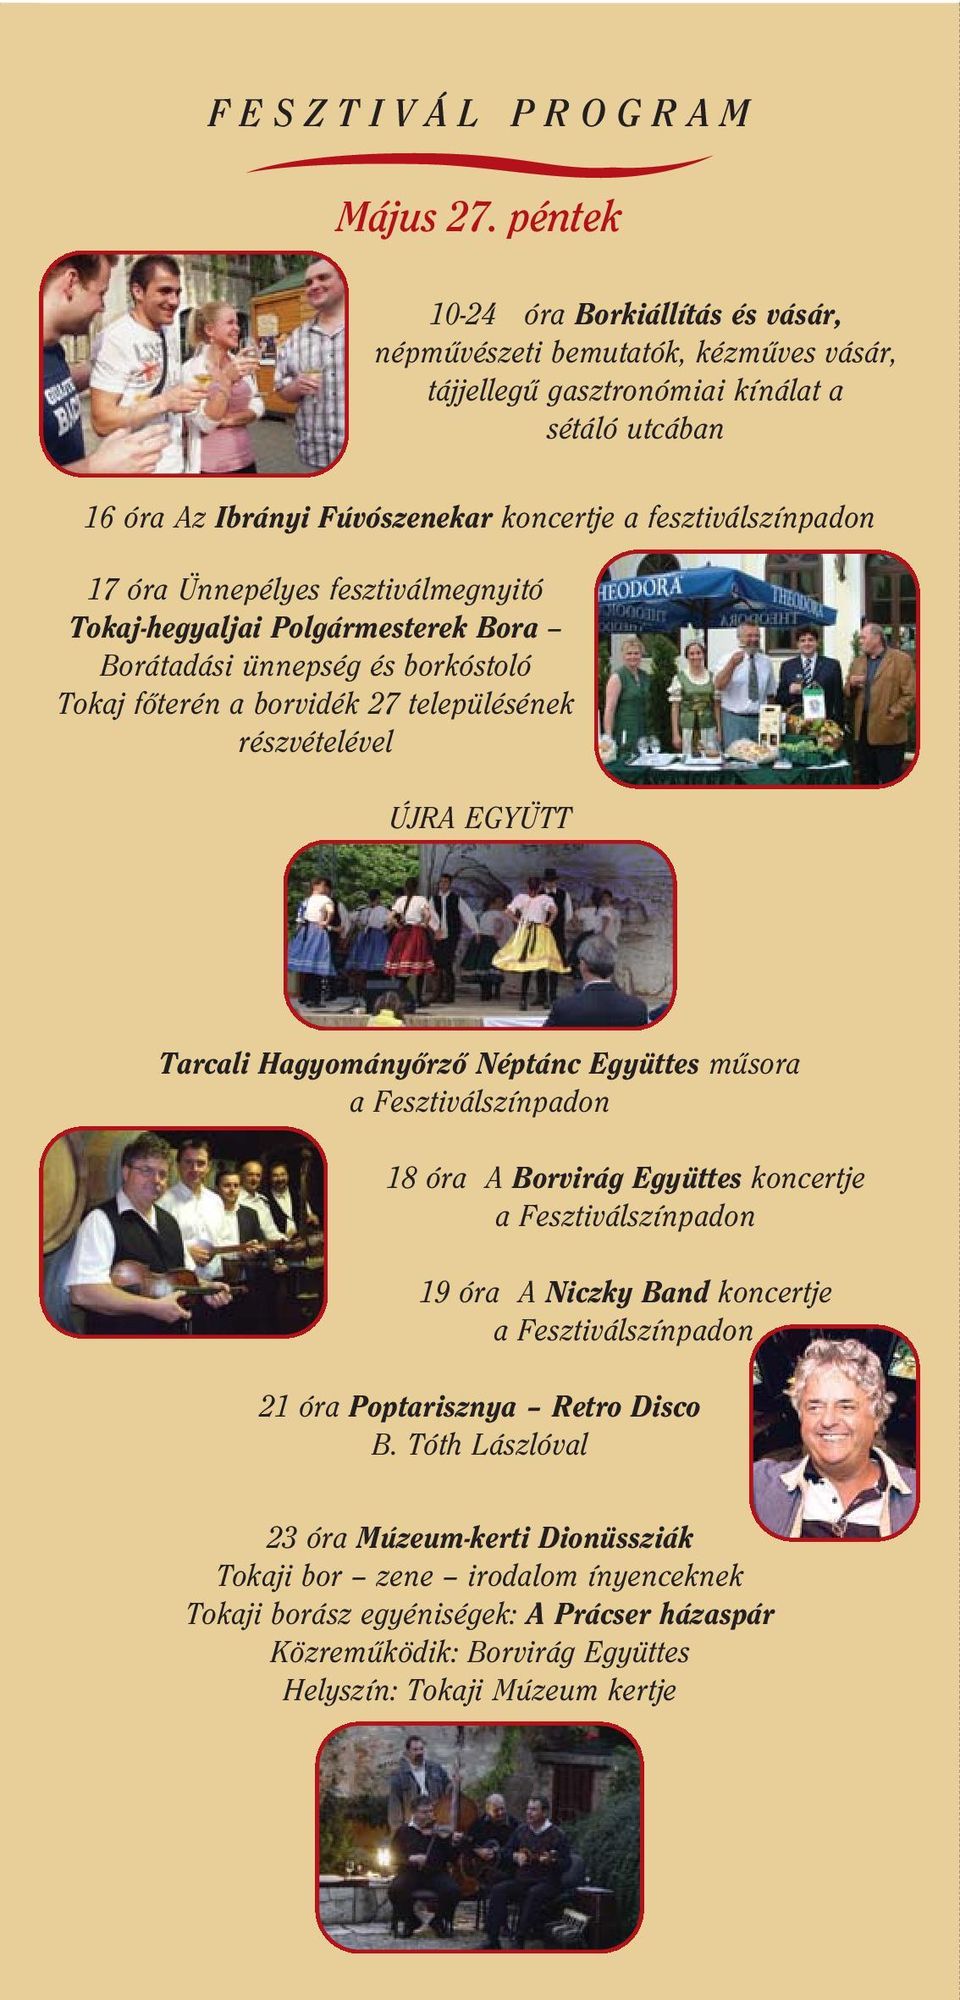 fesztiválszínpadon 17 óra Ünnepélyes fesztiválmegnyitó Tokaj-hegyaljai Polgármesterek Bora Borátadási ünnepség és borkóstoló Tokaj fôterén a borvidék 27 településének részvételével